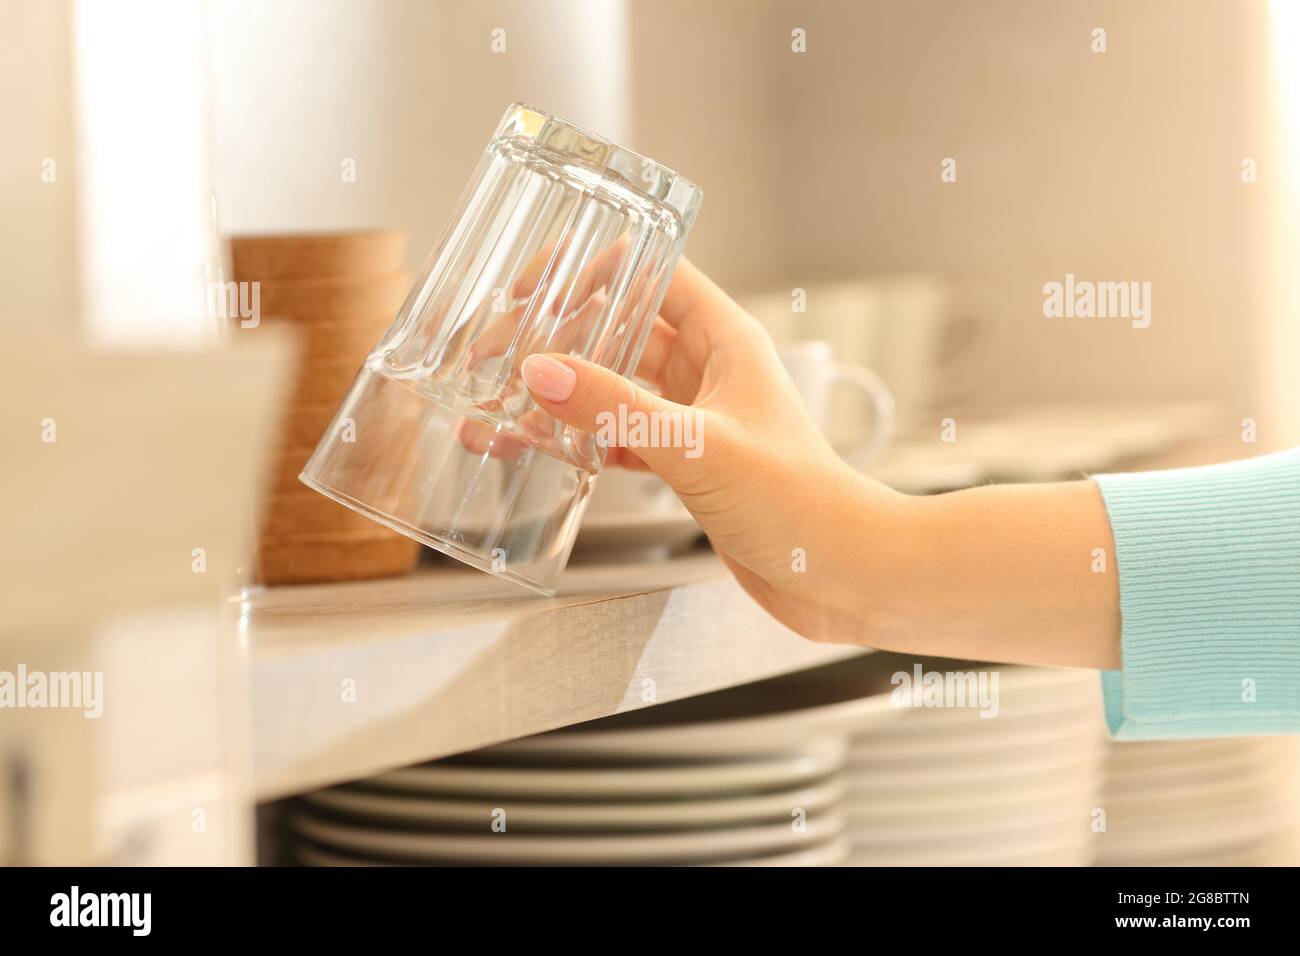 Gros plan d'une femme qui attrape un verre dans la cuisine Banque D'Images